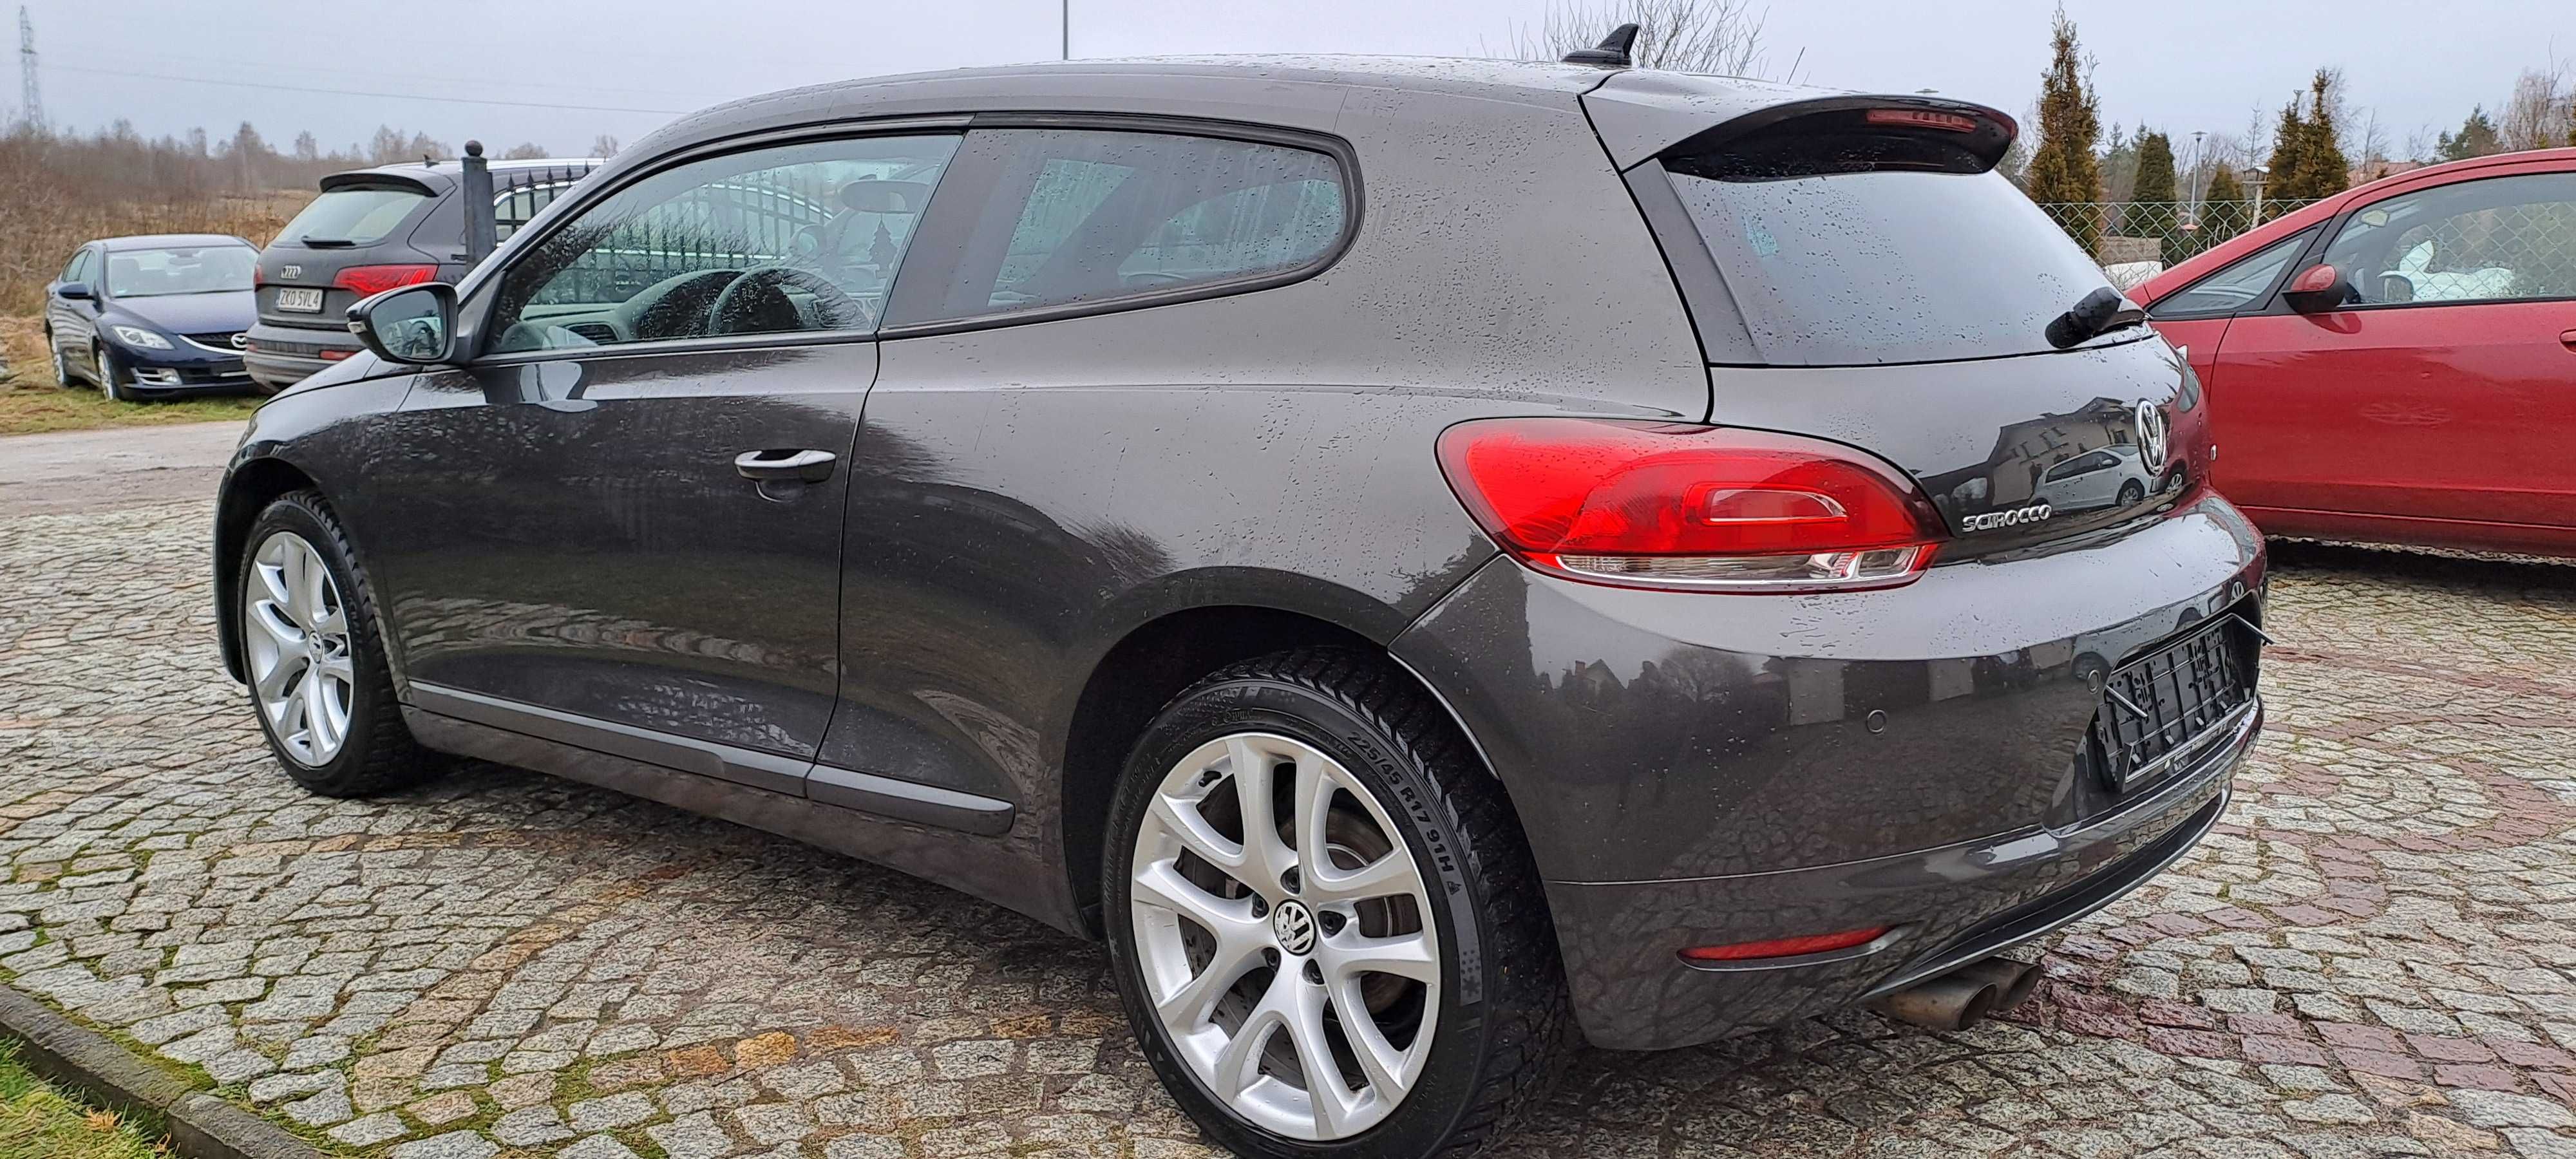 VW Sirocco 1.4 tsi 160 KM Piękne ,bezwypadkowe bogate wyposażenie